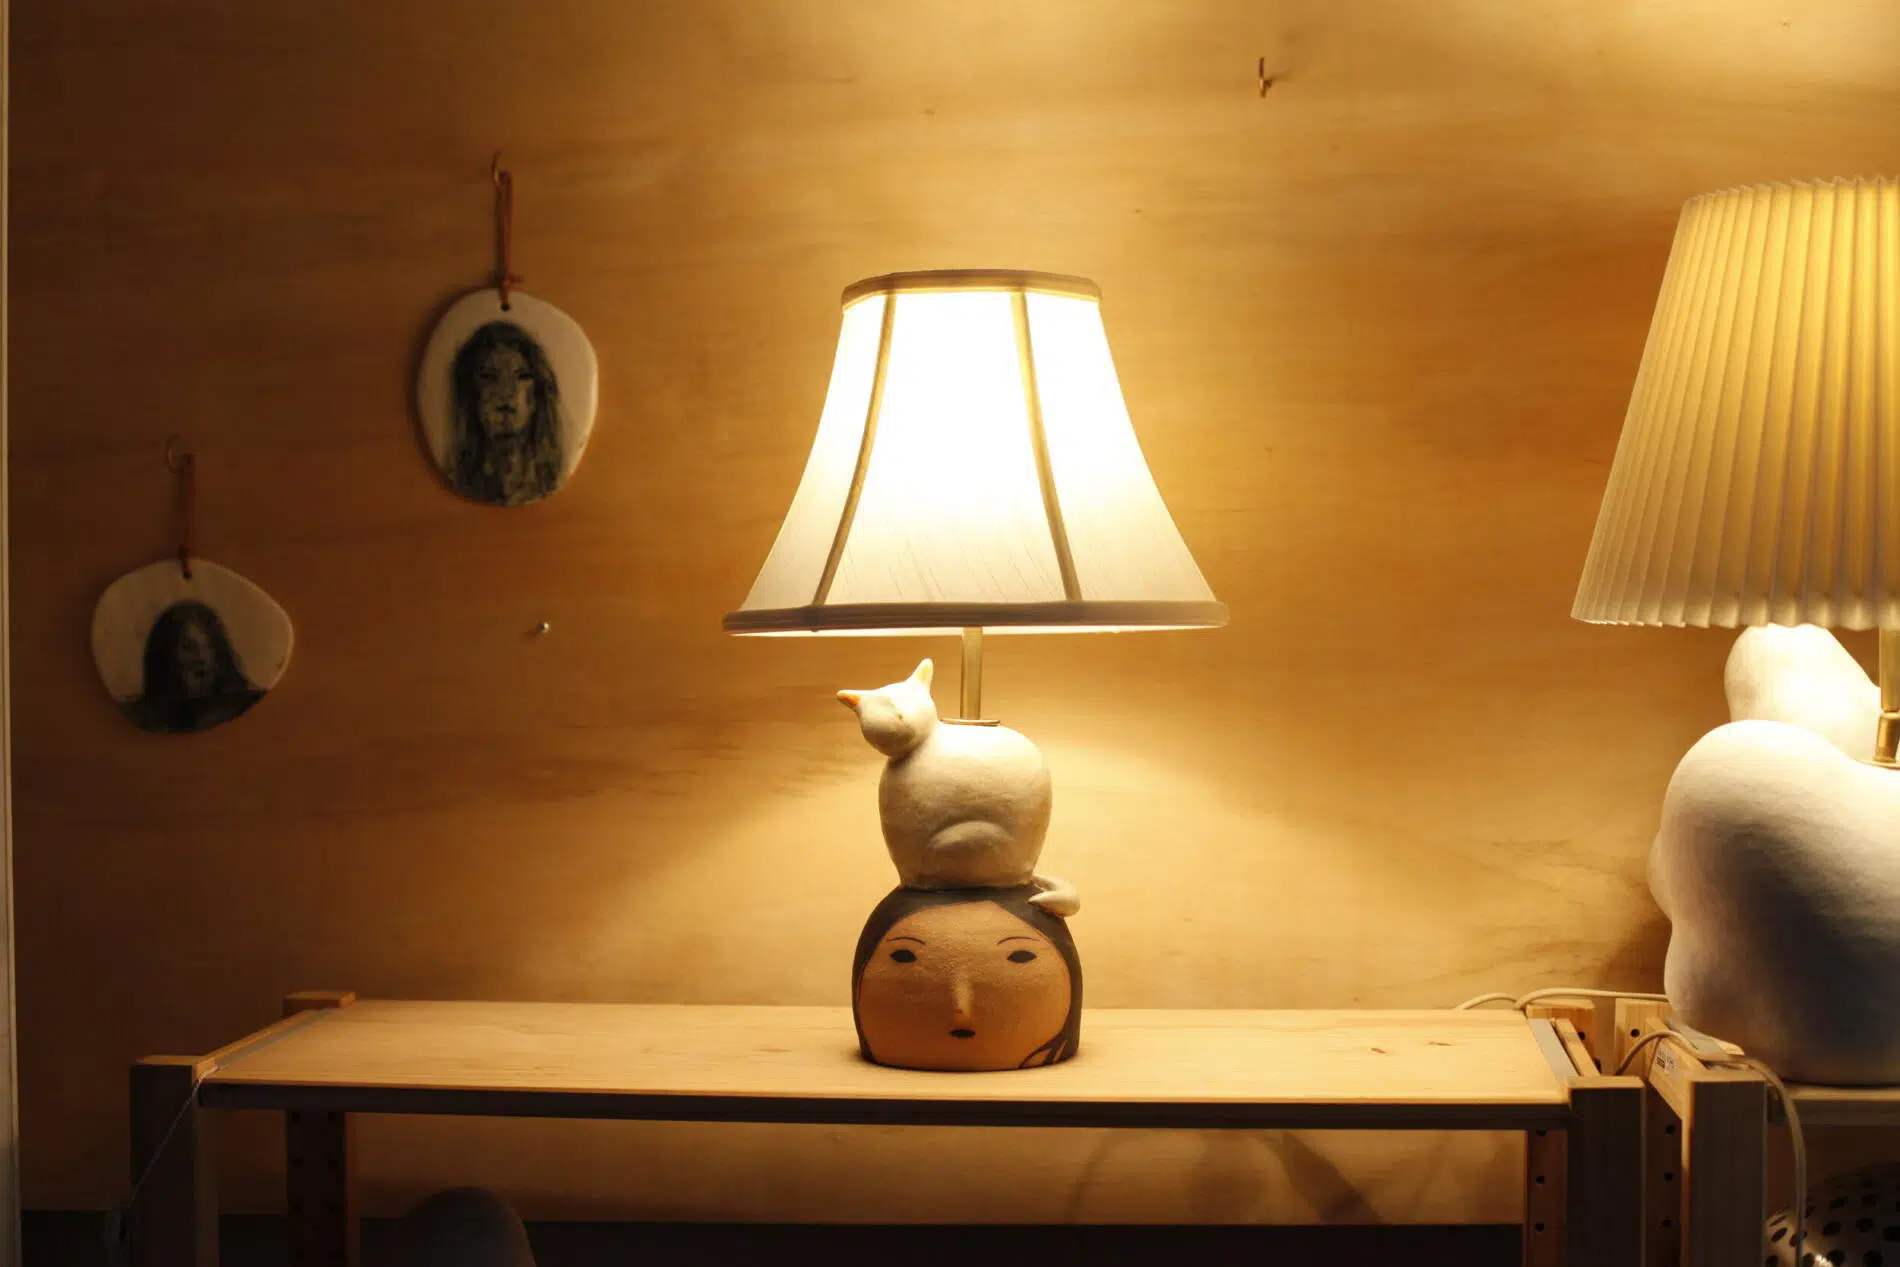 rami kim ceramista personajes en ceramica de uso funcional lampara cabeza y gato